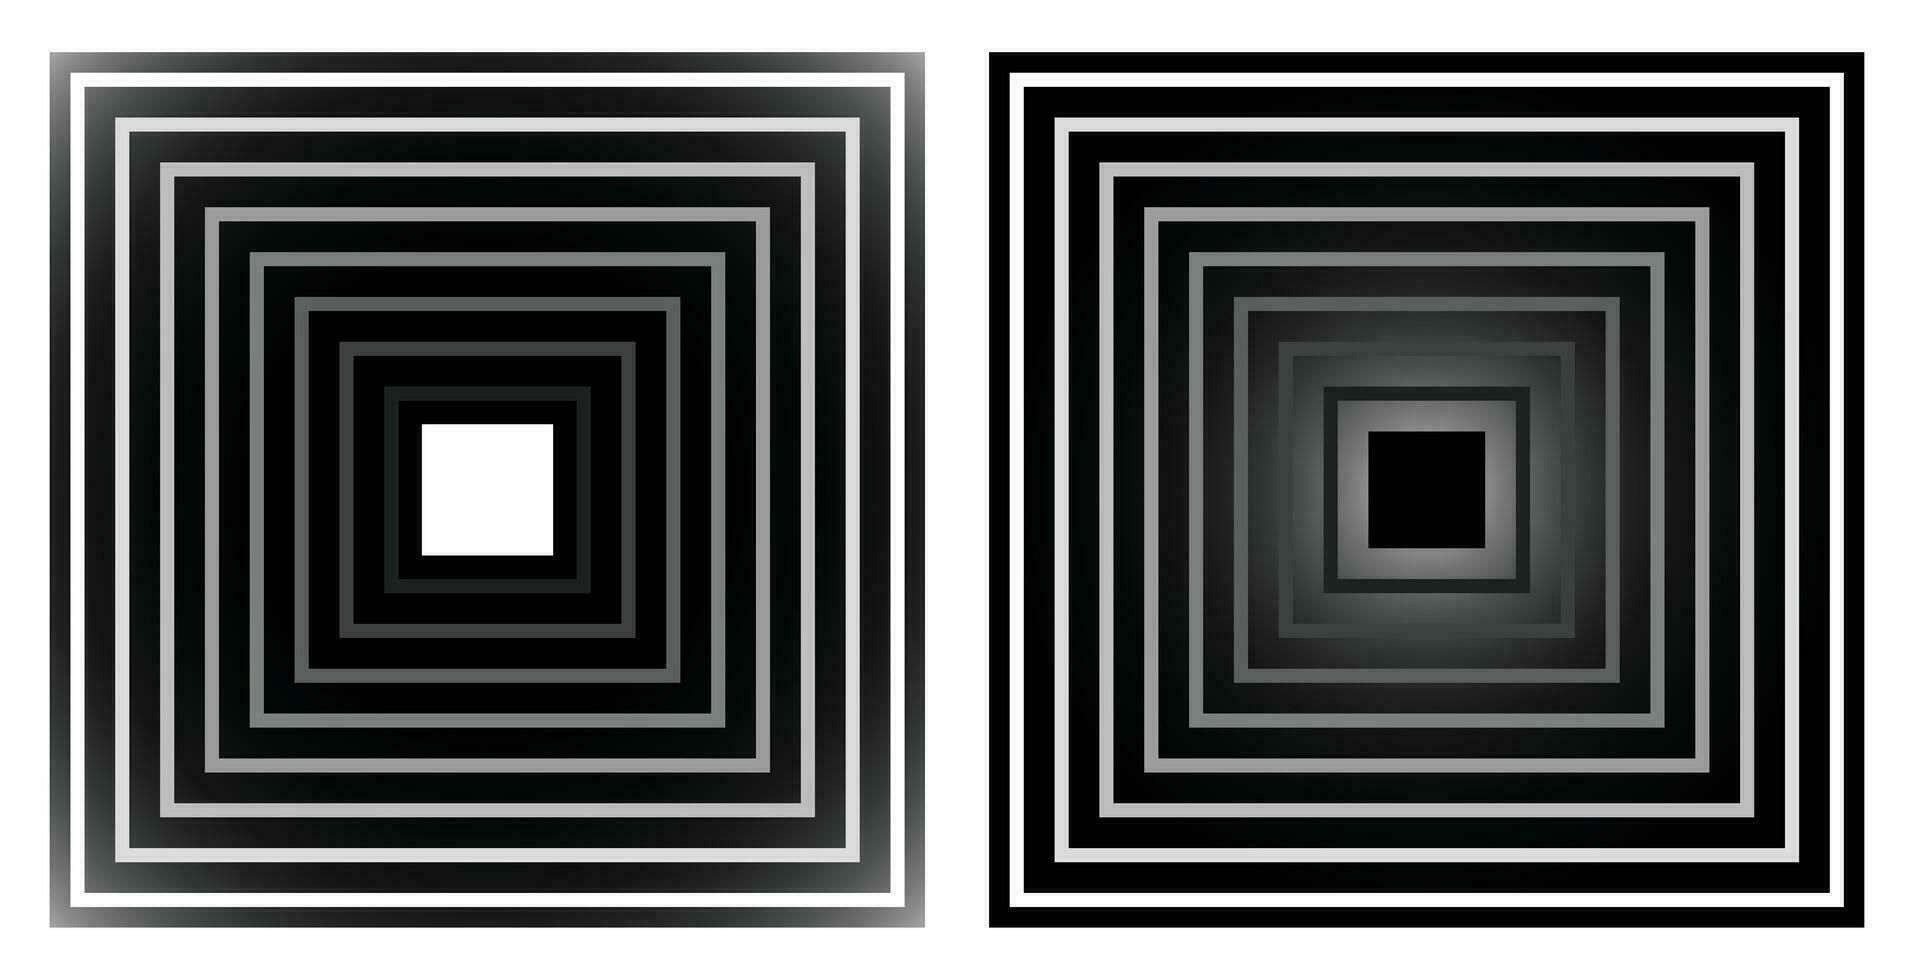 kvadrater form illustration minimalistisk för affisch baner abstrakt geometri mönster konstverk vektor